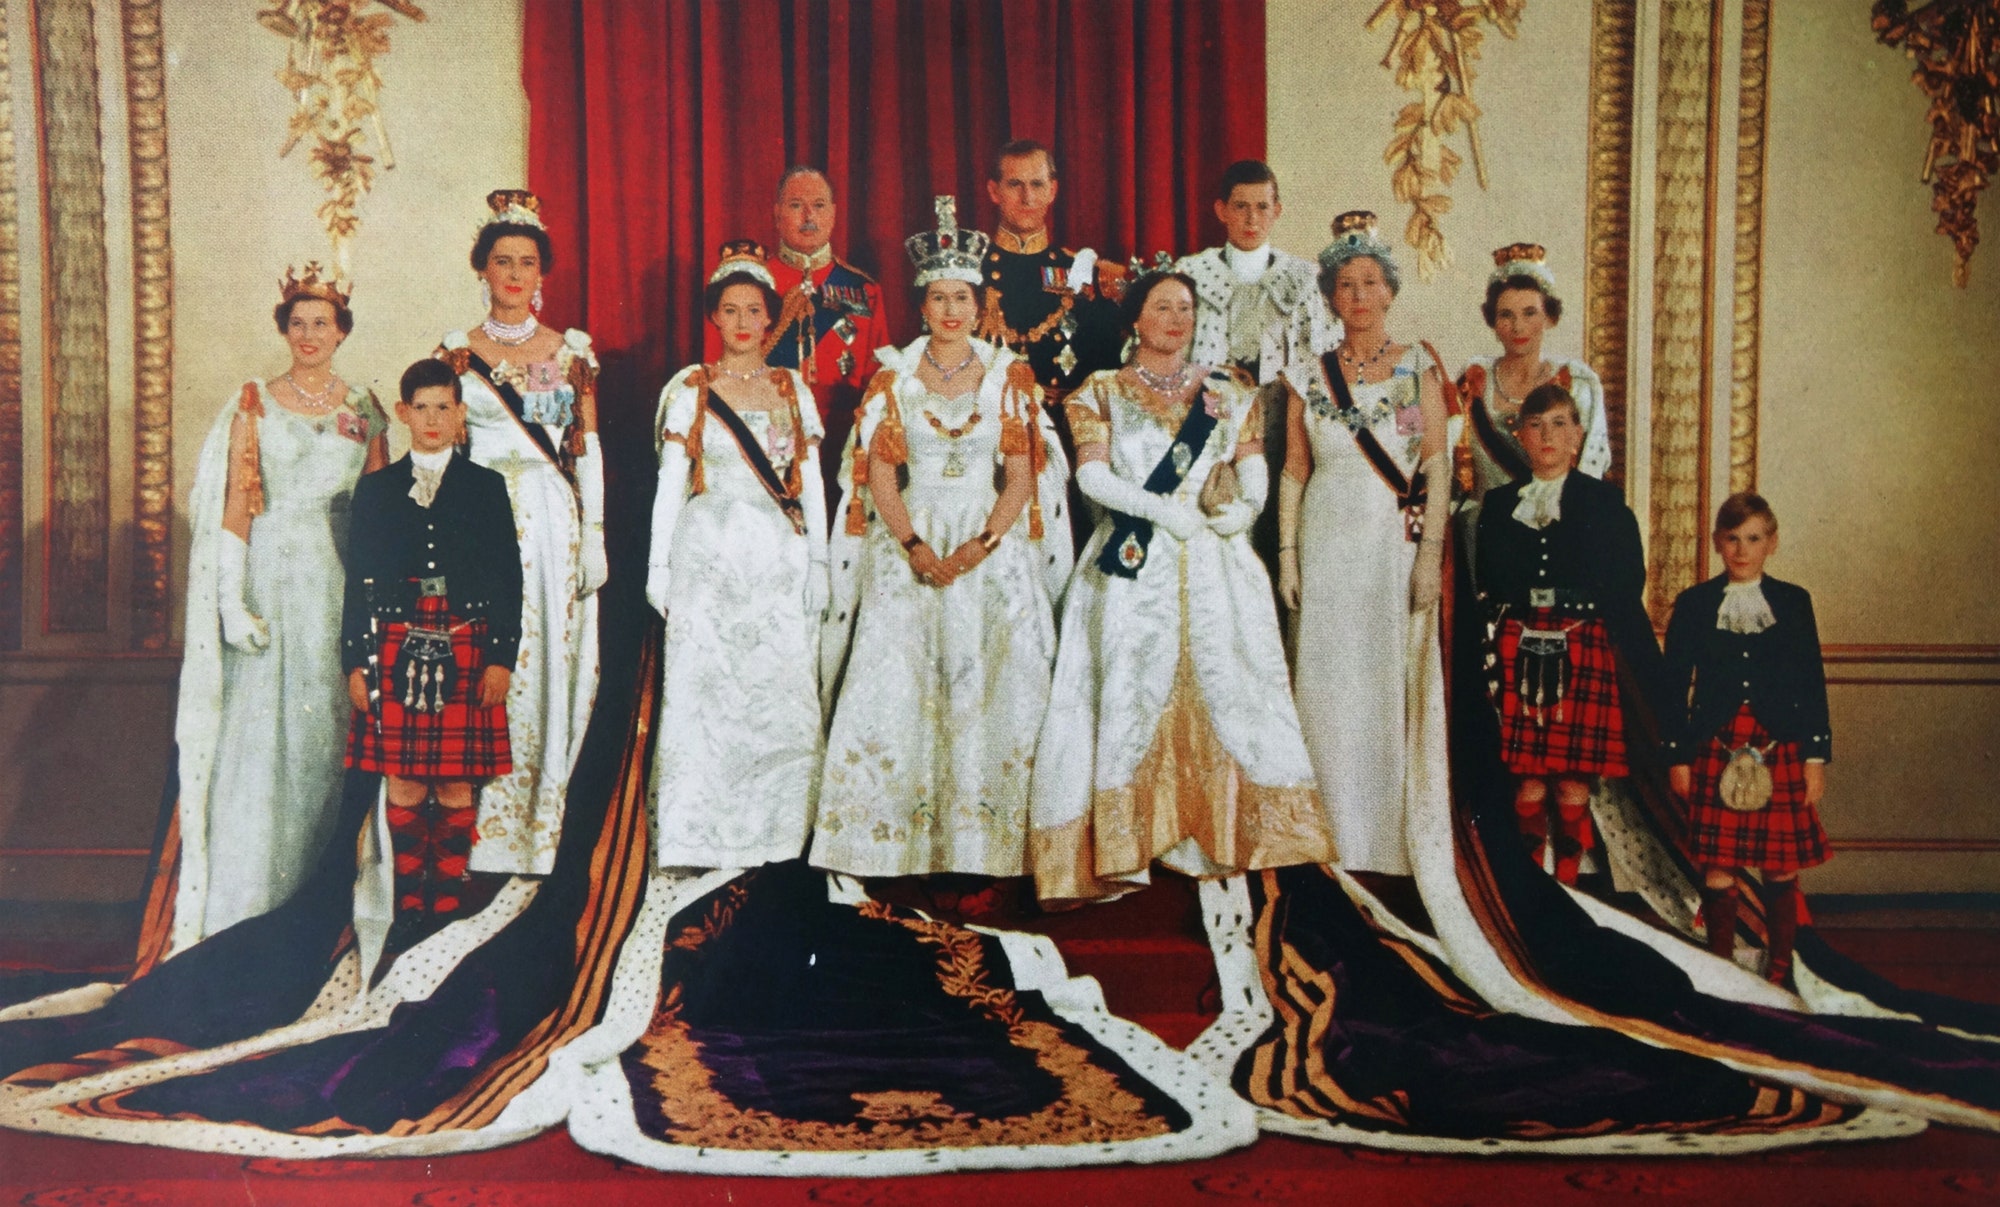 Photos: A Look Back at Queen Elizabeth II's Coronation